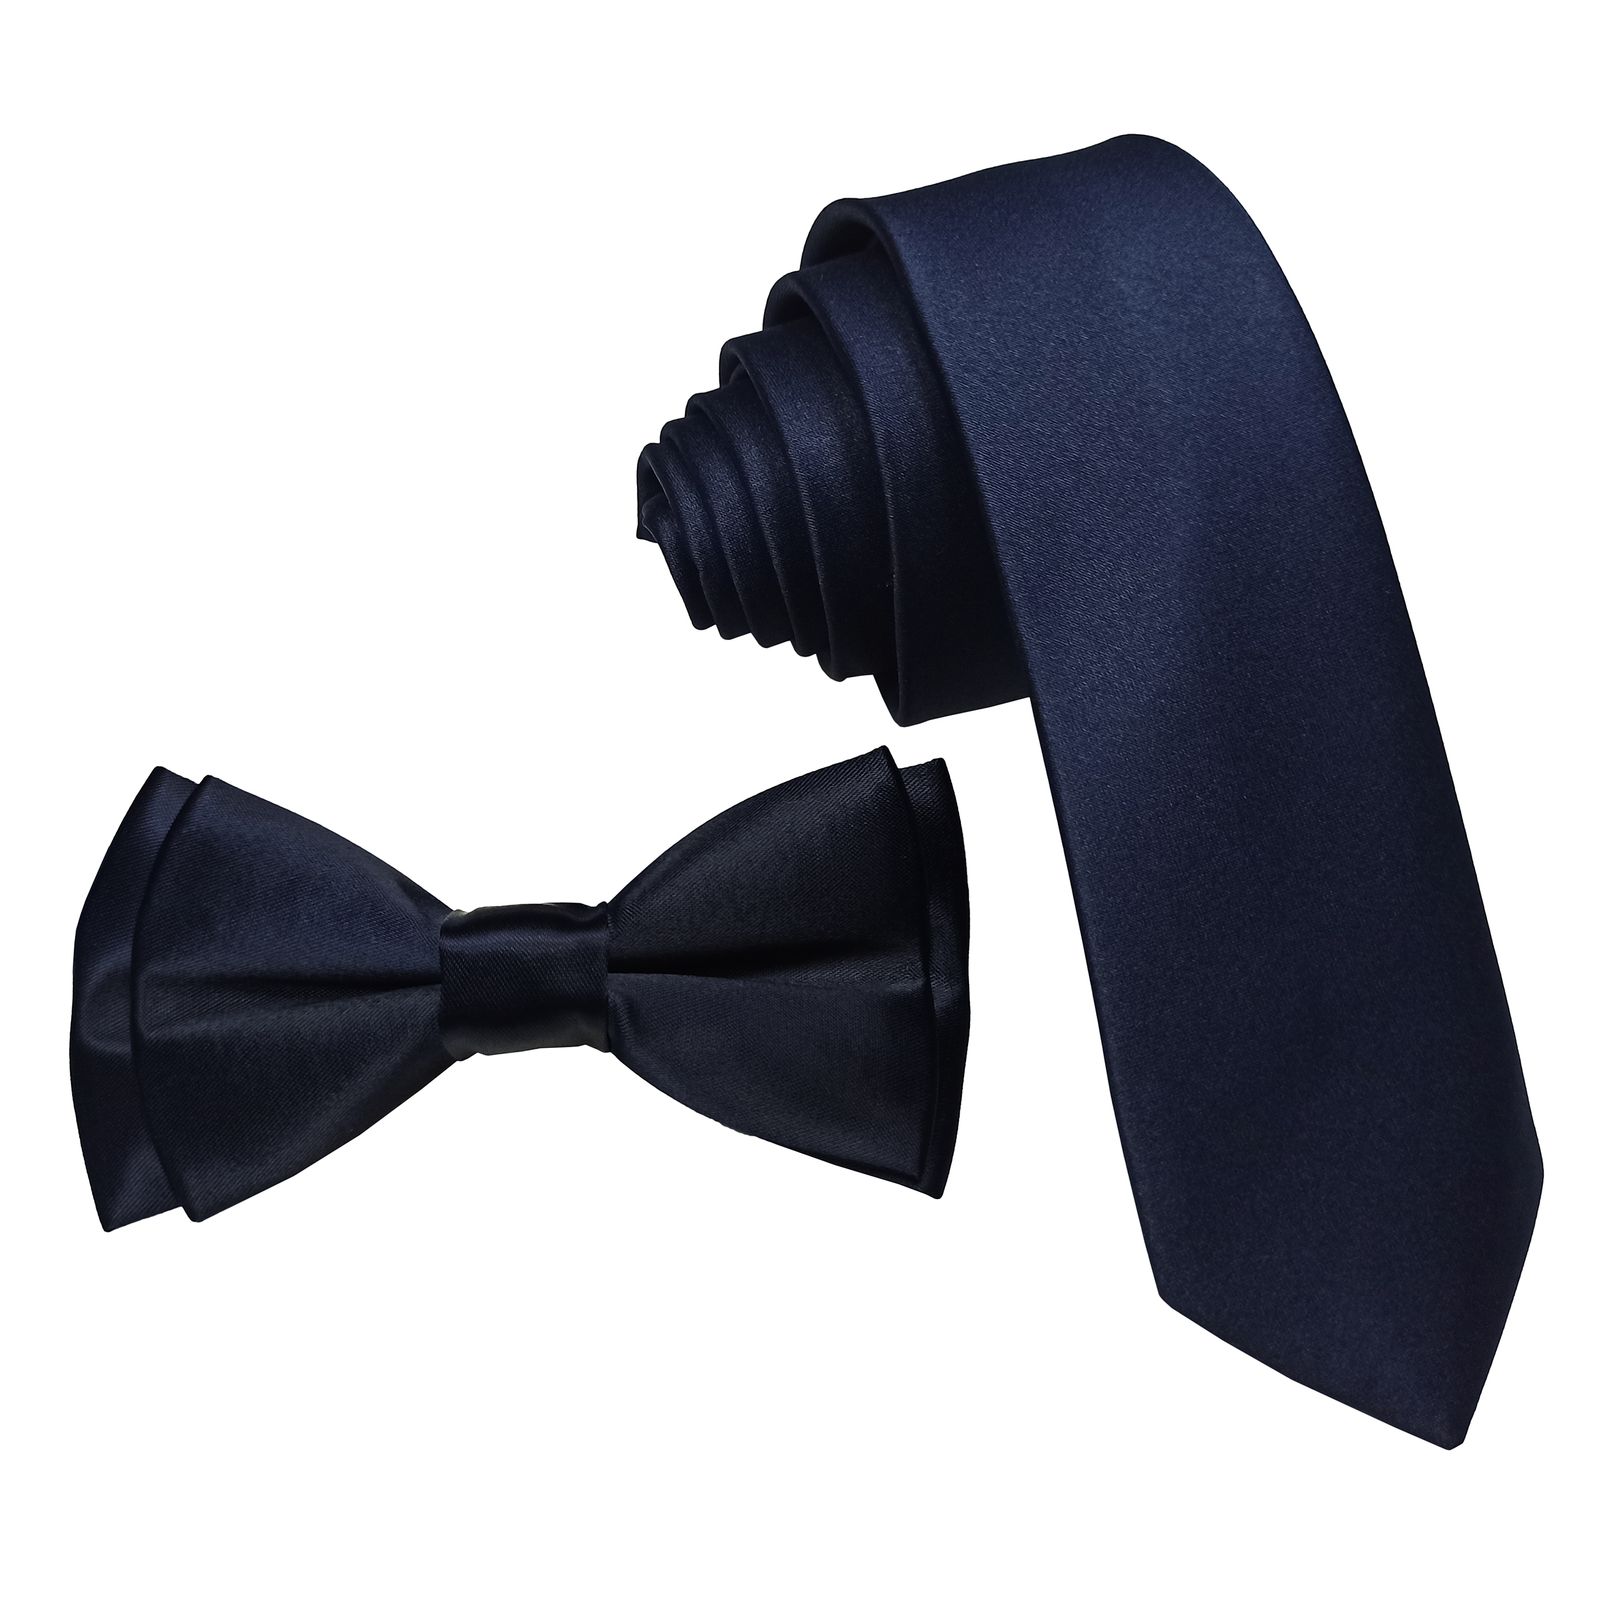  ست کراوات و پاپیون و دستمال جیب مردانه کد S -  - 3